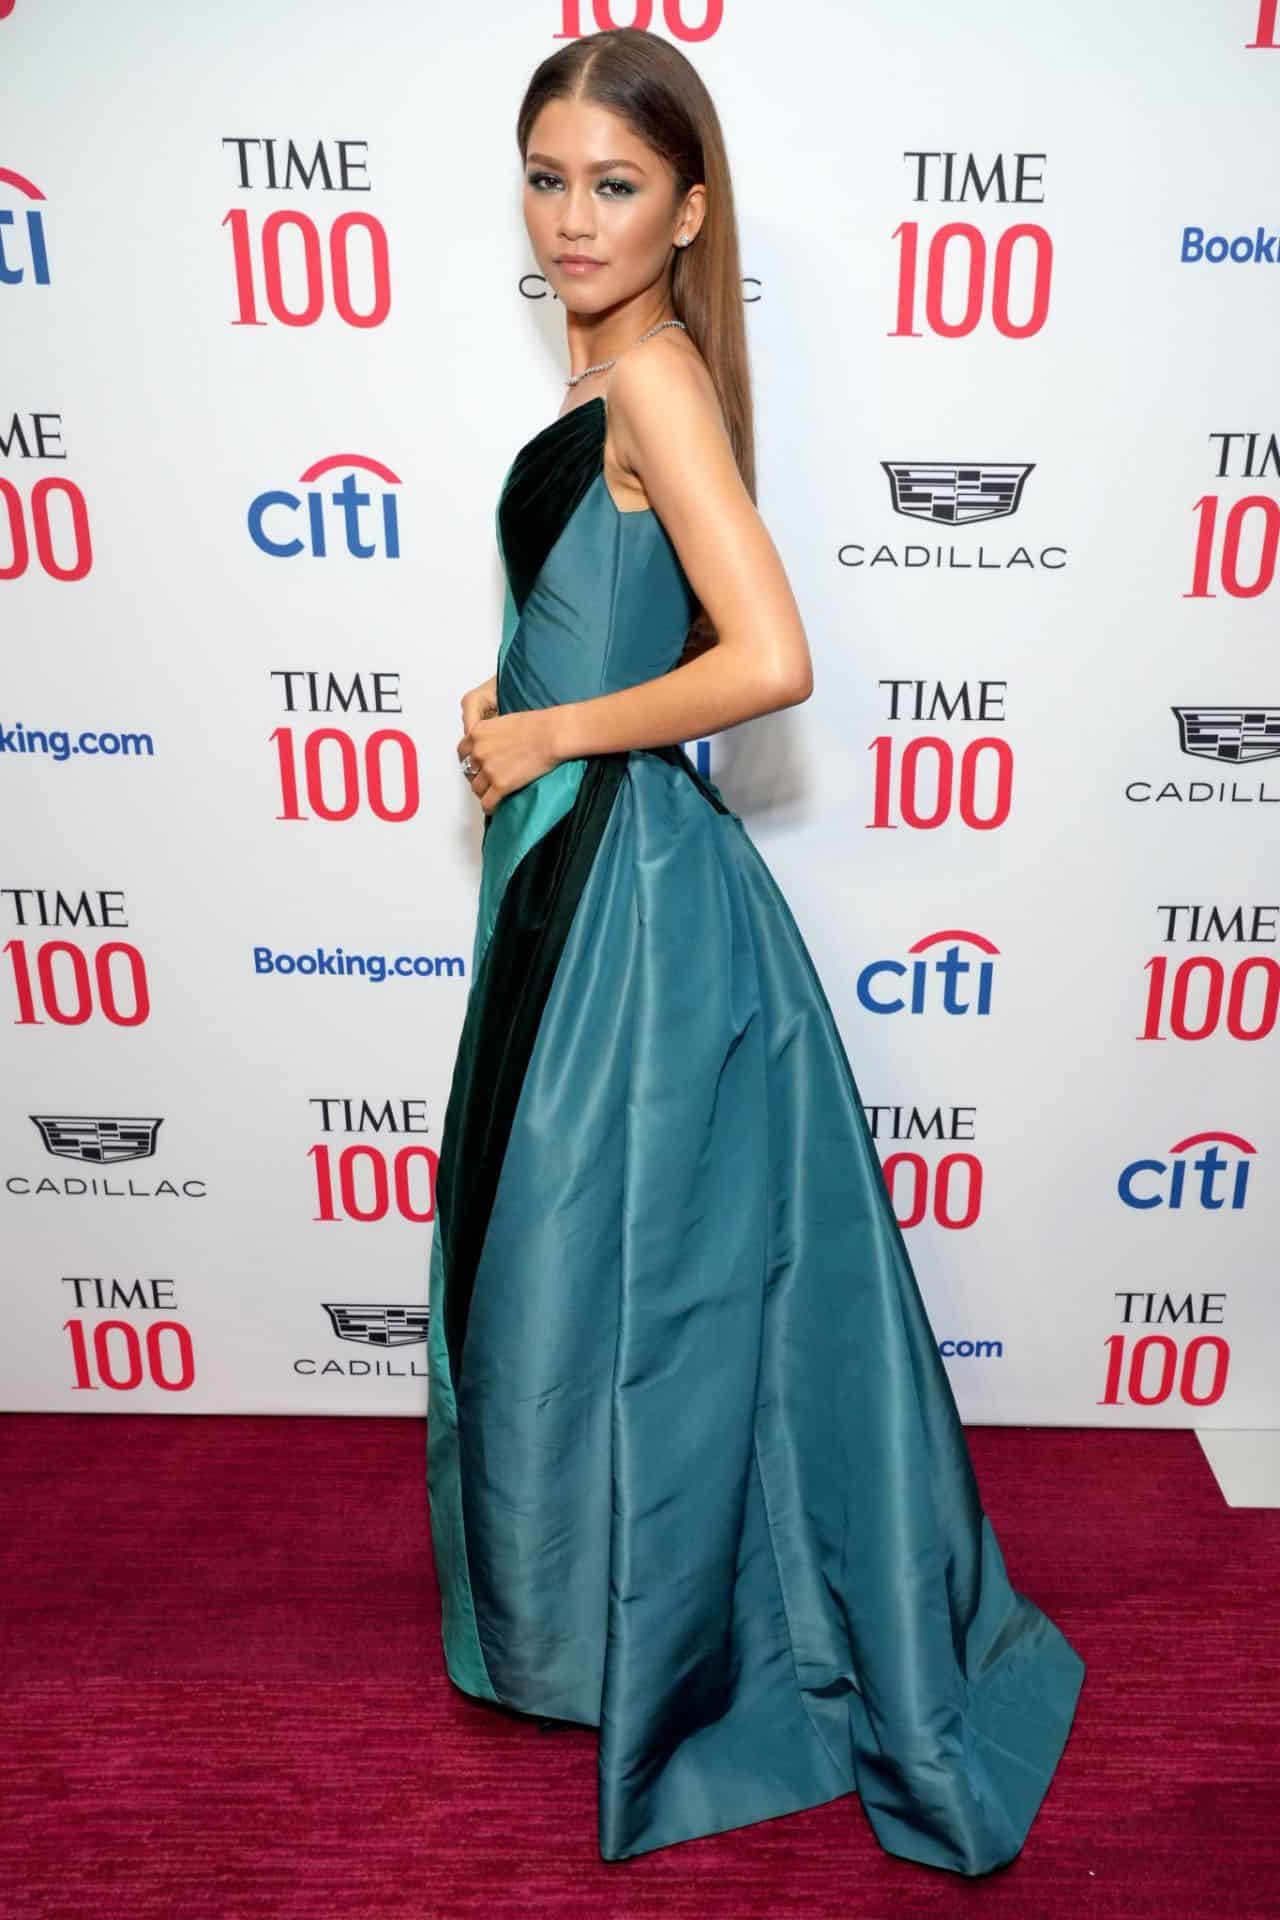 Zendaya Looked Ravishing in an Elegant Dress at the Time 100 Gala in NYC